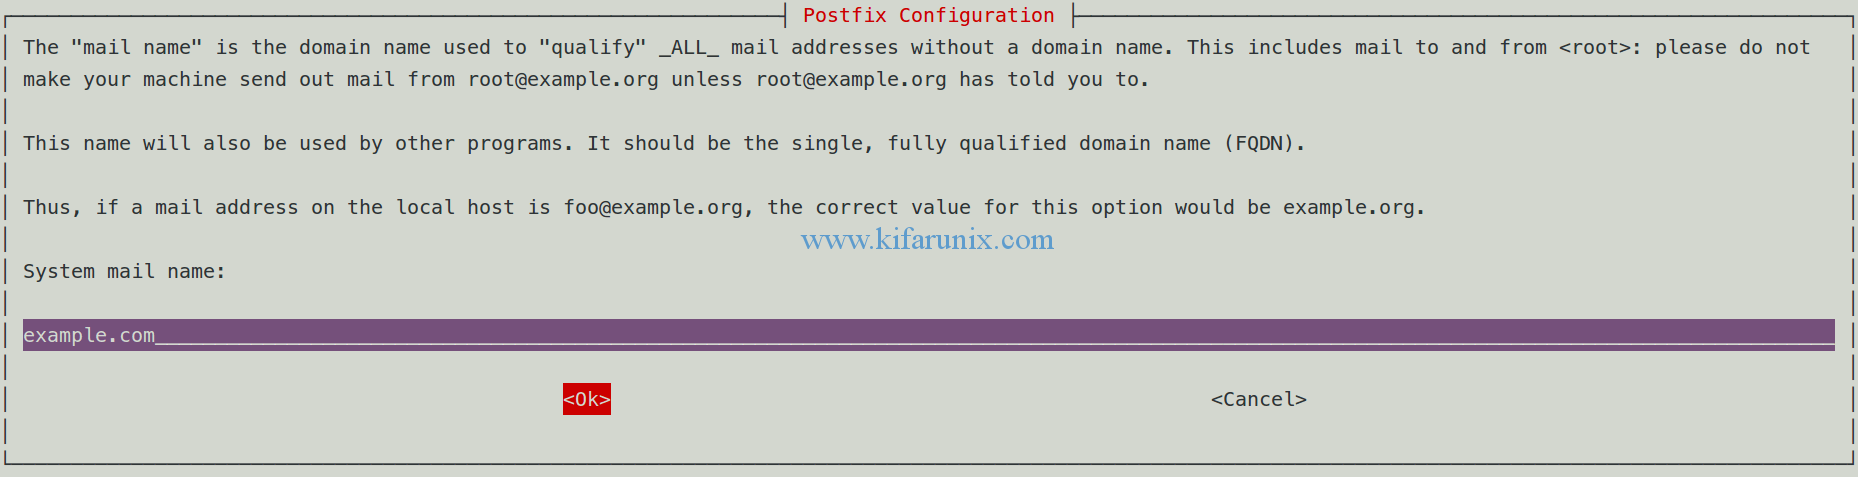 Configure Postfix to Use Gmail SMTP on Ubuntu 18.04